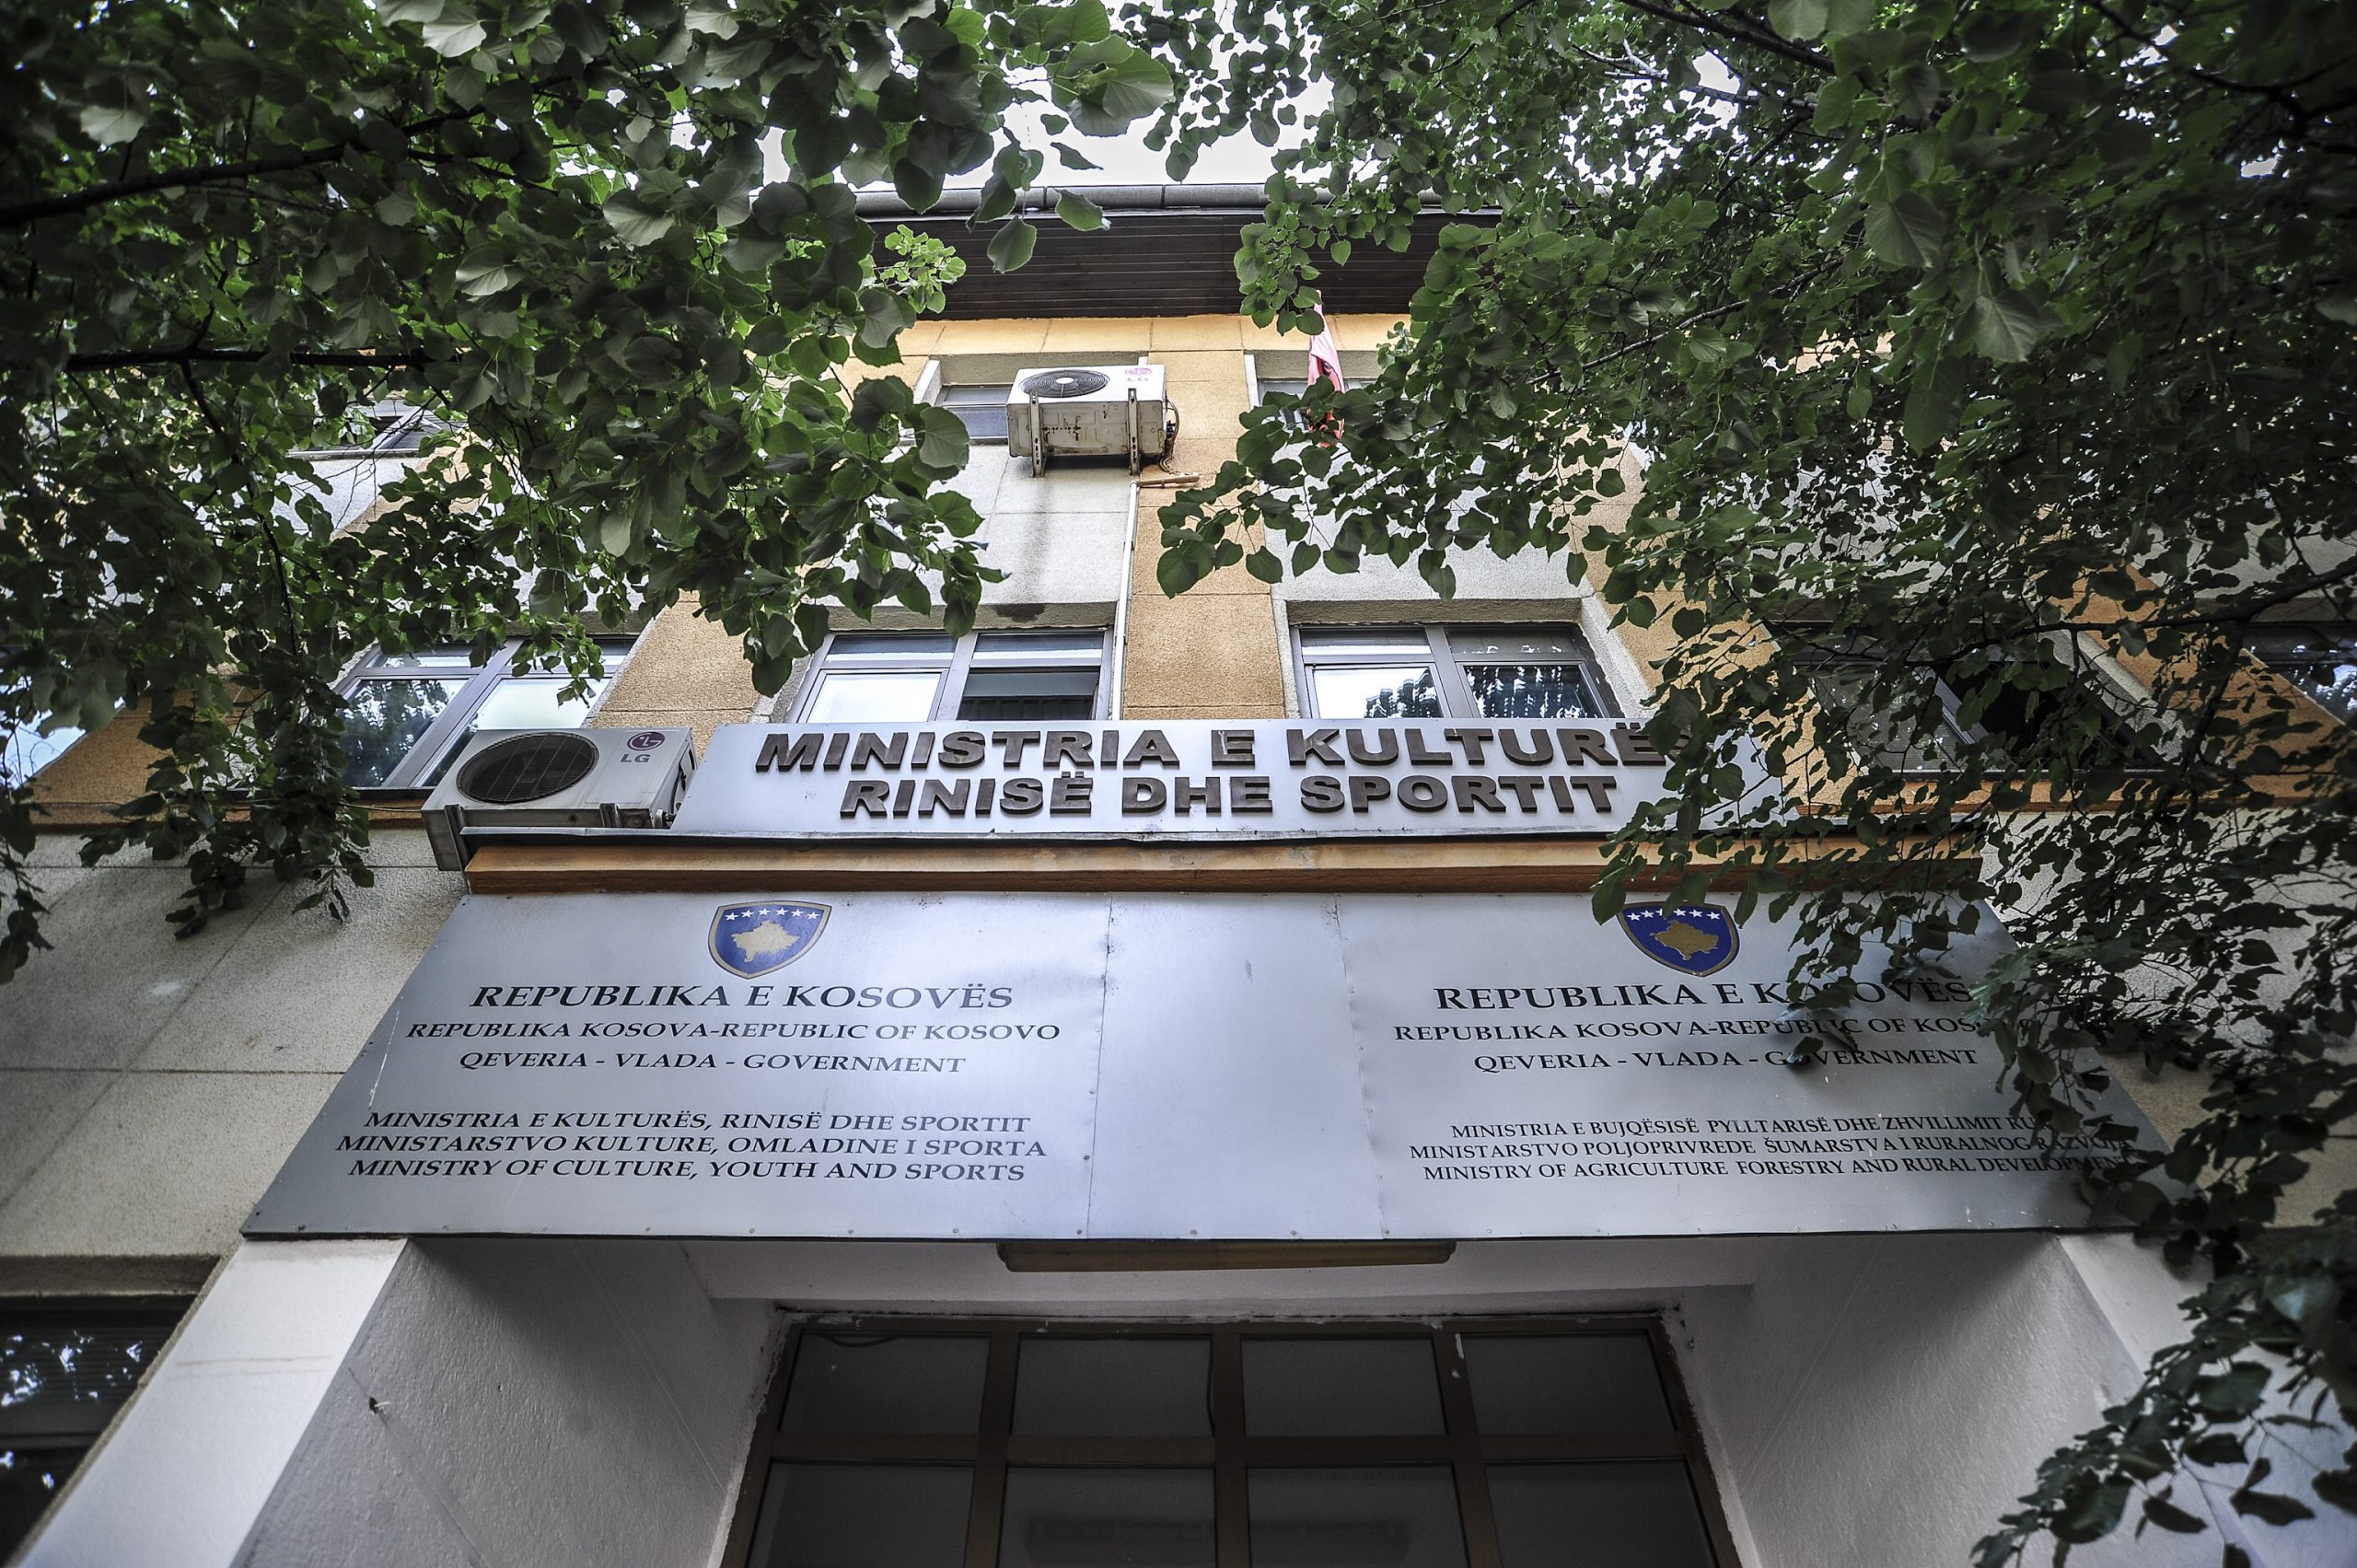 Ministria e Kulturës ka paguar gjysmë milion euro për një hapësirë private që s’u shfrytëzua kurrë